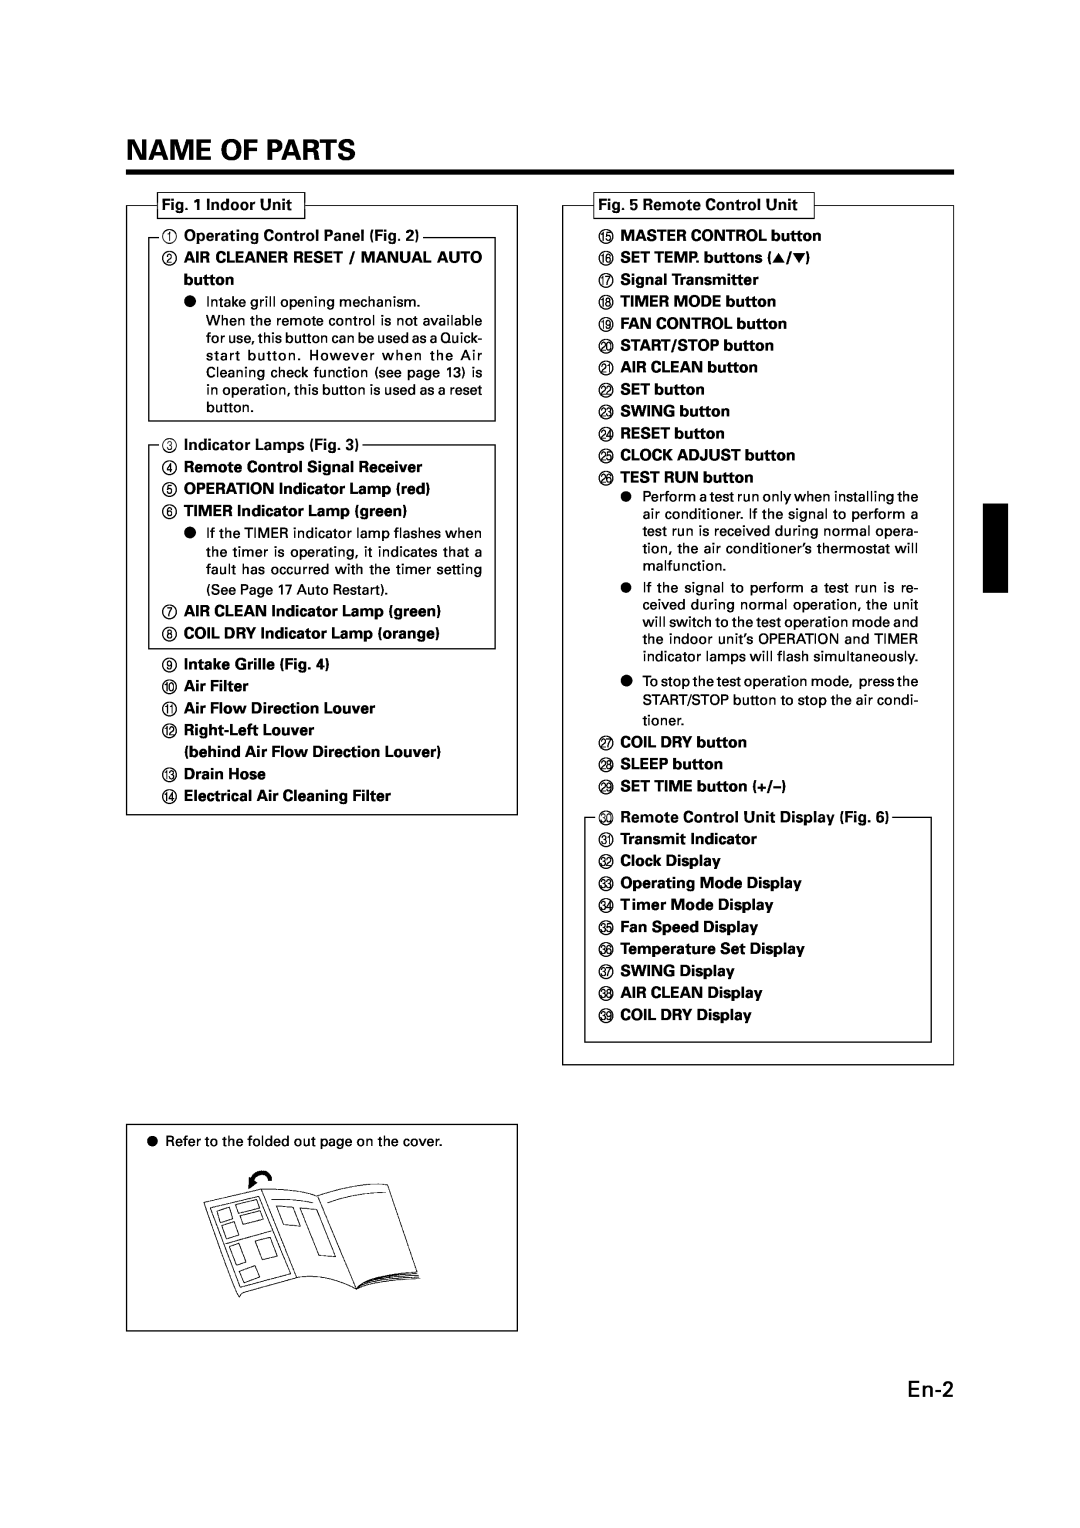 Fujitsu ASU9RMLQ ASU12RMLQ AOU24RML AOU36RML manual Name Of Parts, En-2 